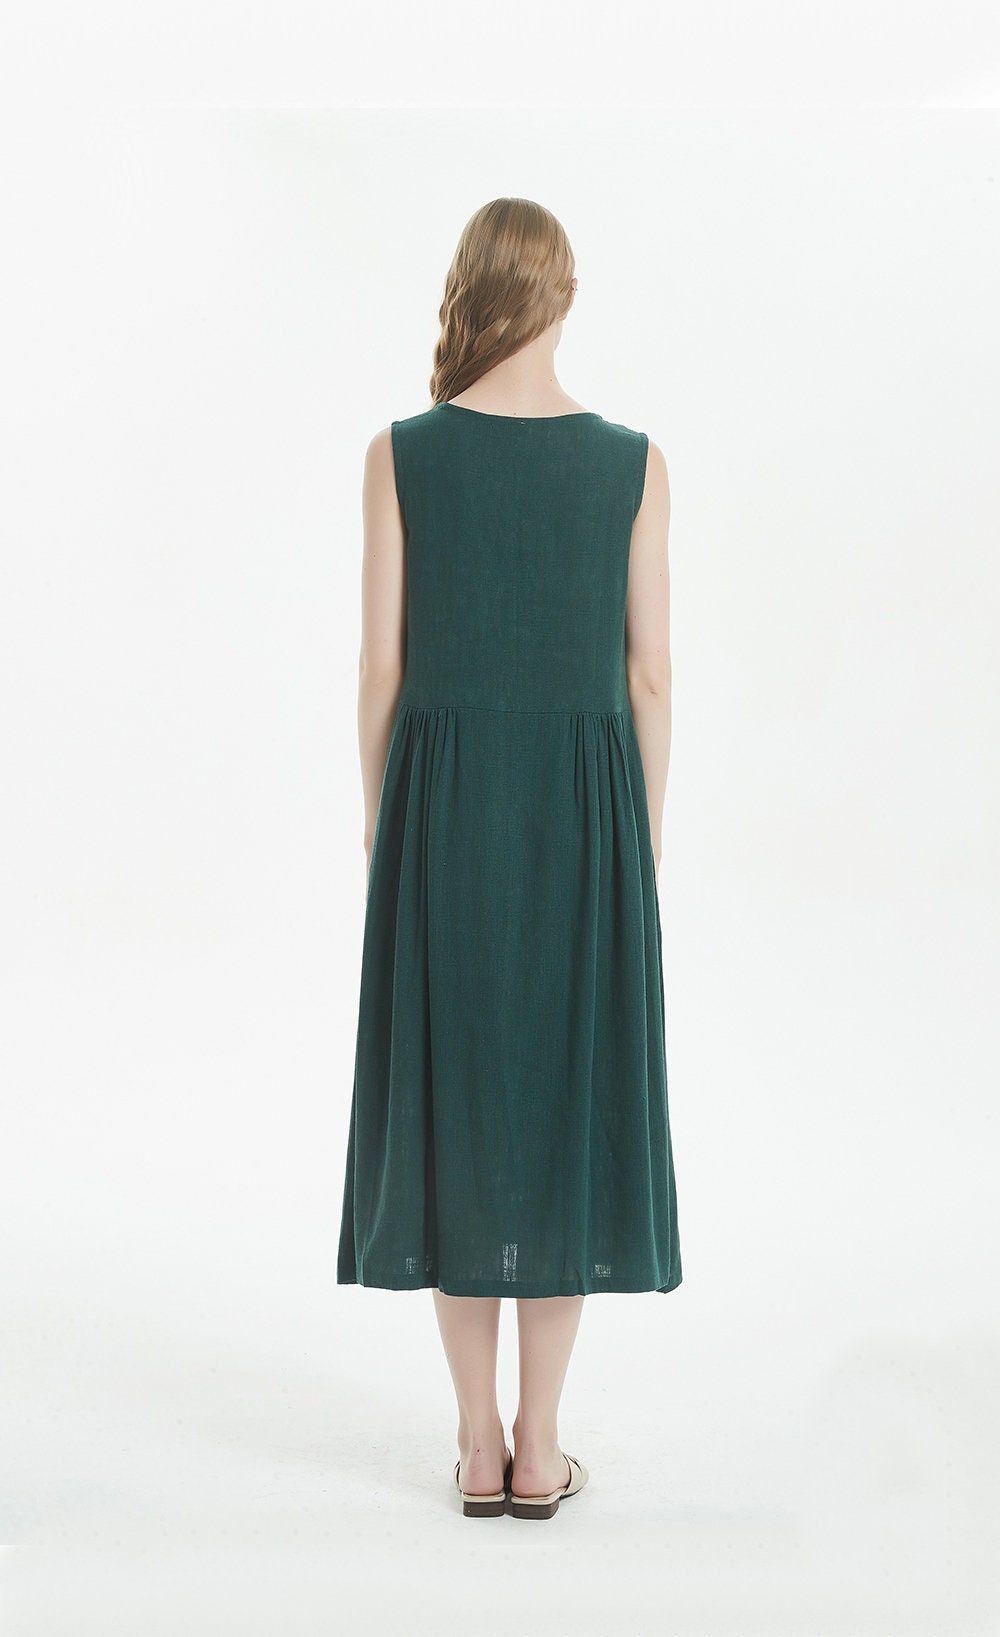 50% Sale 9 Gray-blue Linen Dress With Pockets Sleeveless Midi | Etsy